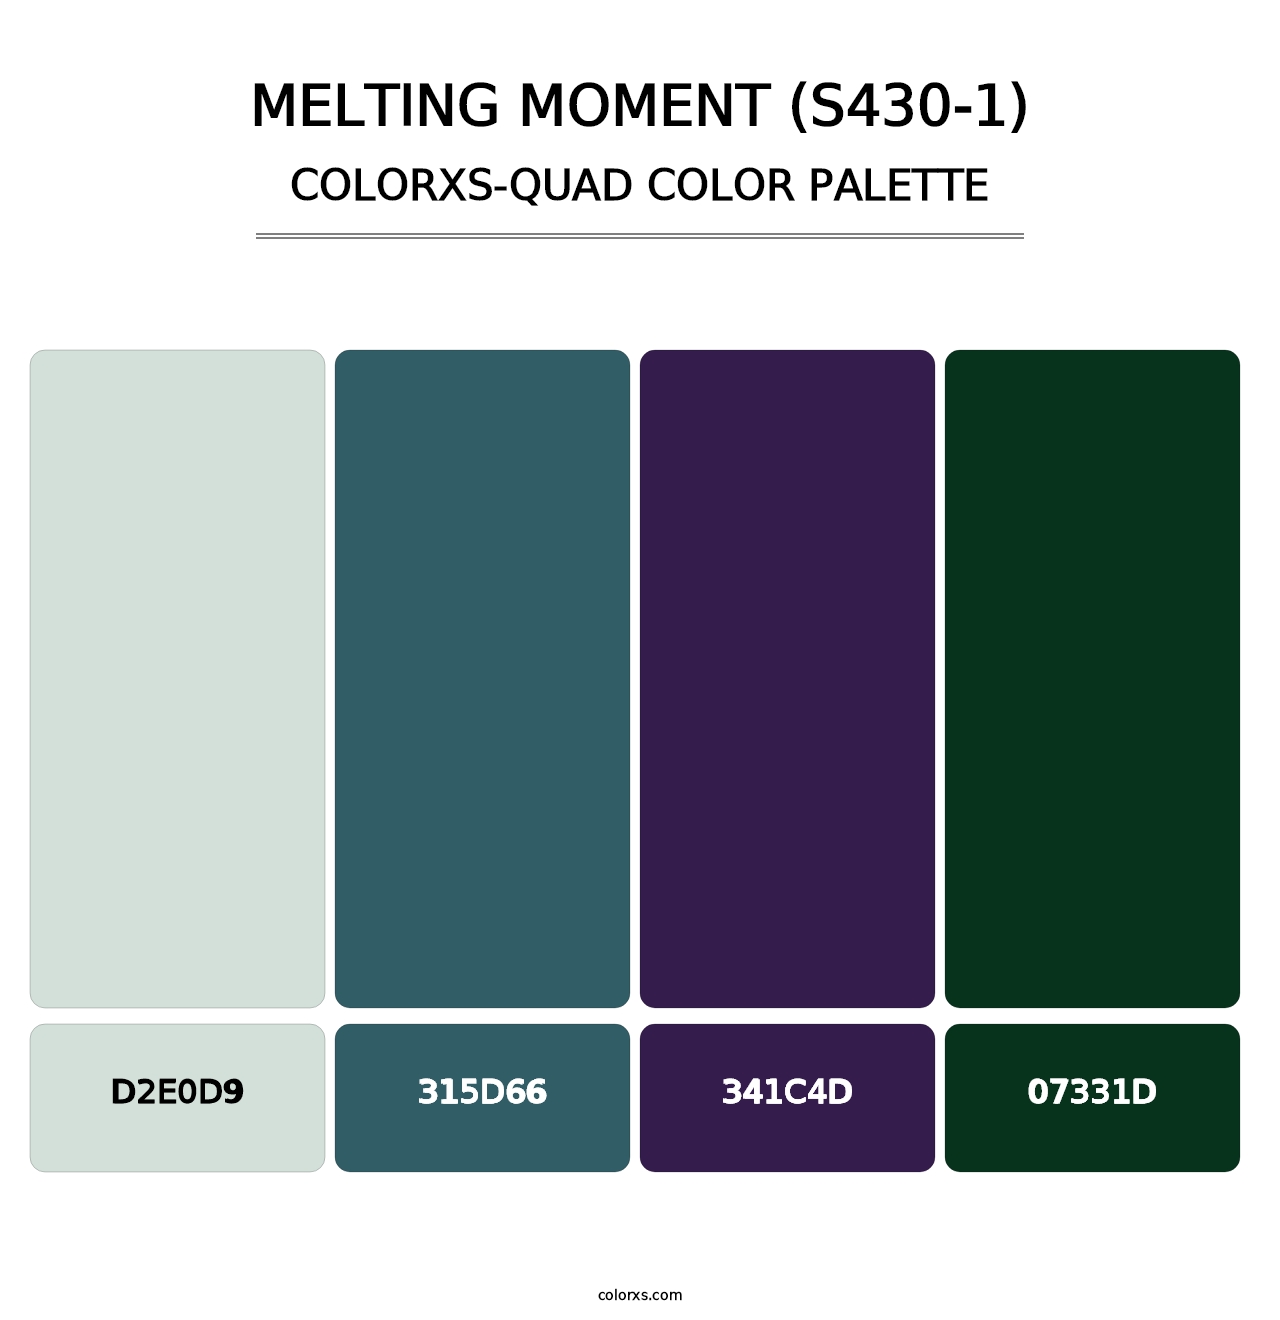 Melting Moment (S430-1) - Colorxs Quad Palette